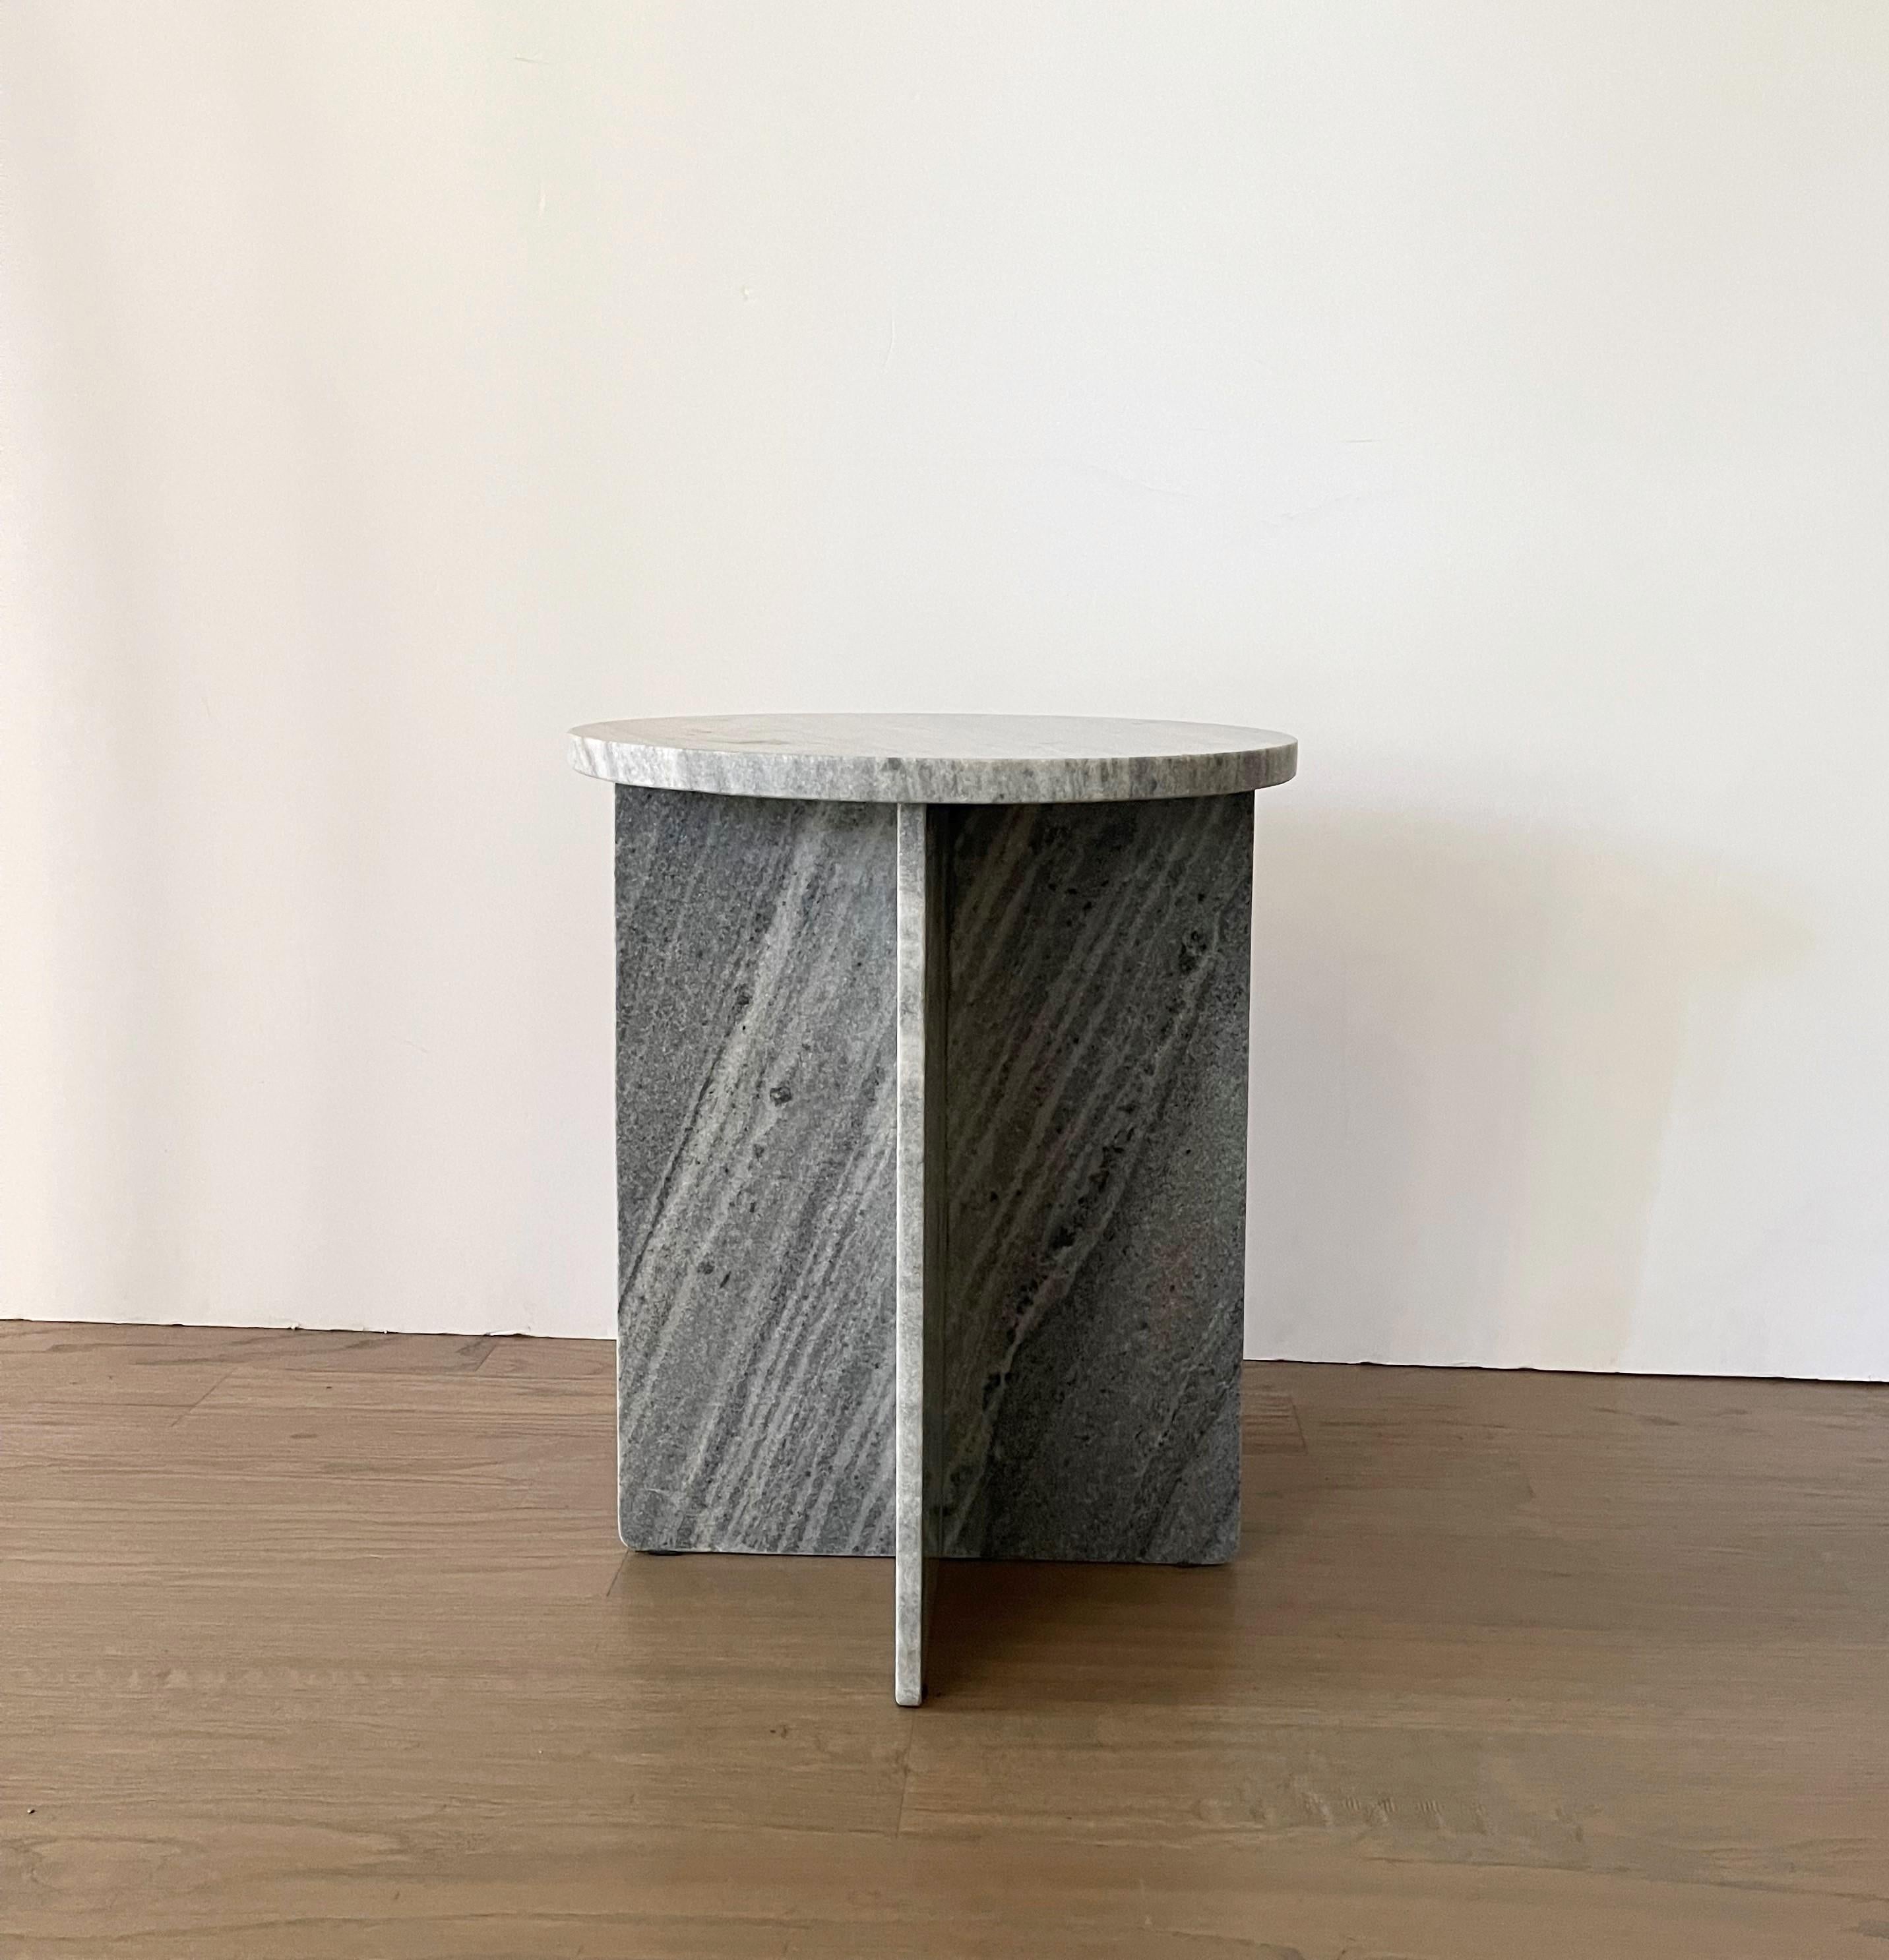 Magnifique sous tous les angles, cette table d'appoint en marbre massif présente une silhouette géométrique simple, dont la base est constituée de panneaux plats, ce qui en fait autant une œuvre d'art minimaliste qu'un meuble fonctionnel. Le plateau